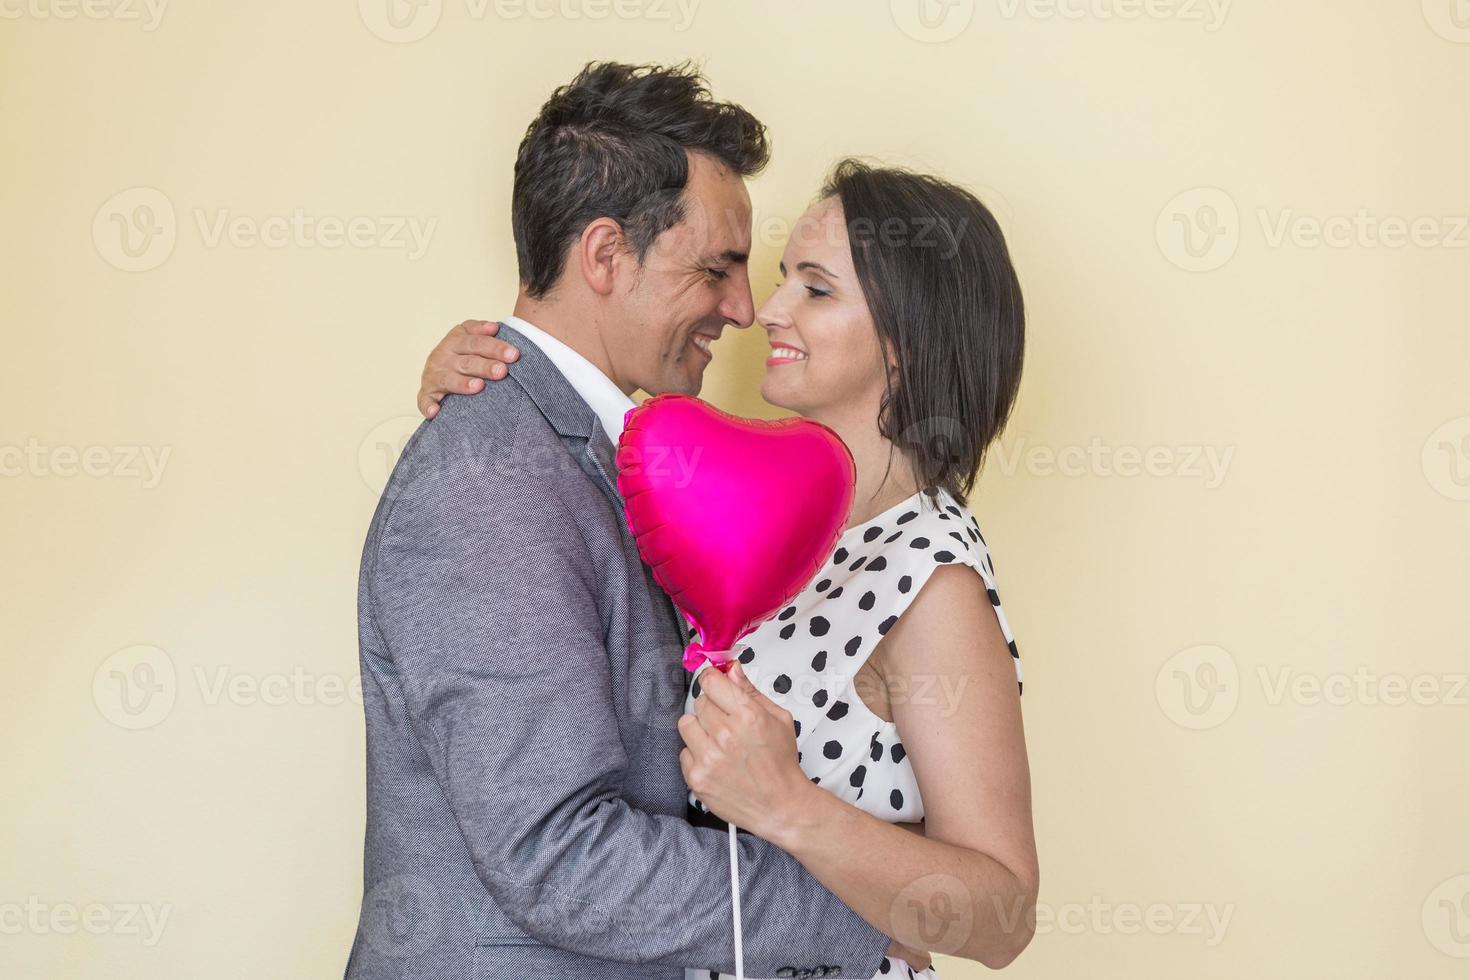 alegre Hispano Pareja con corazón conformado globo abrazando en estudio foto